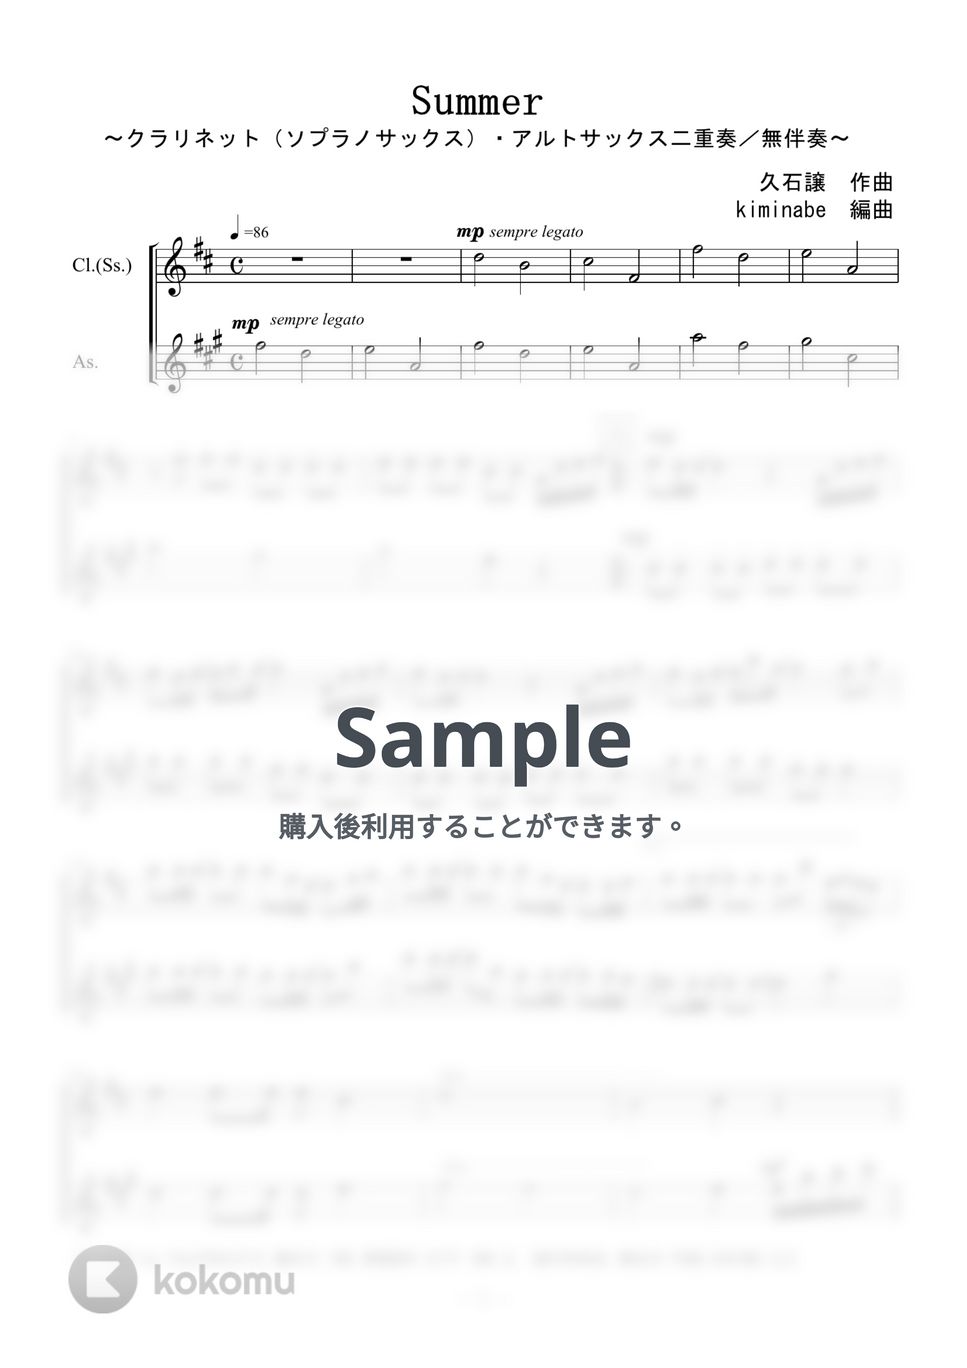 久石譲 - Summer (クラリネットorソプラノサックス・アルトサックス二重奏／無伴奏) by kiminabe